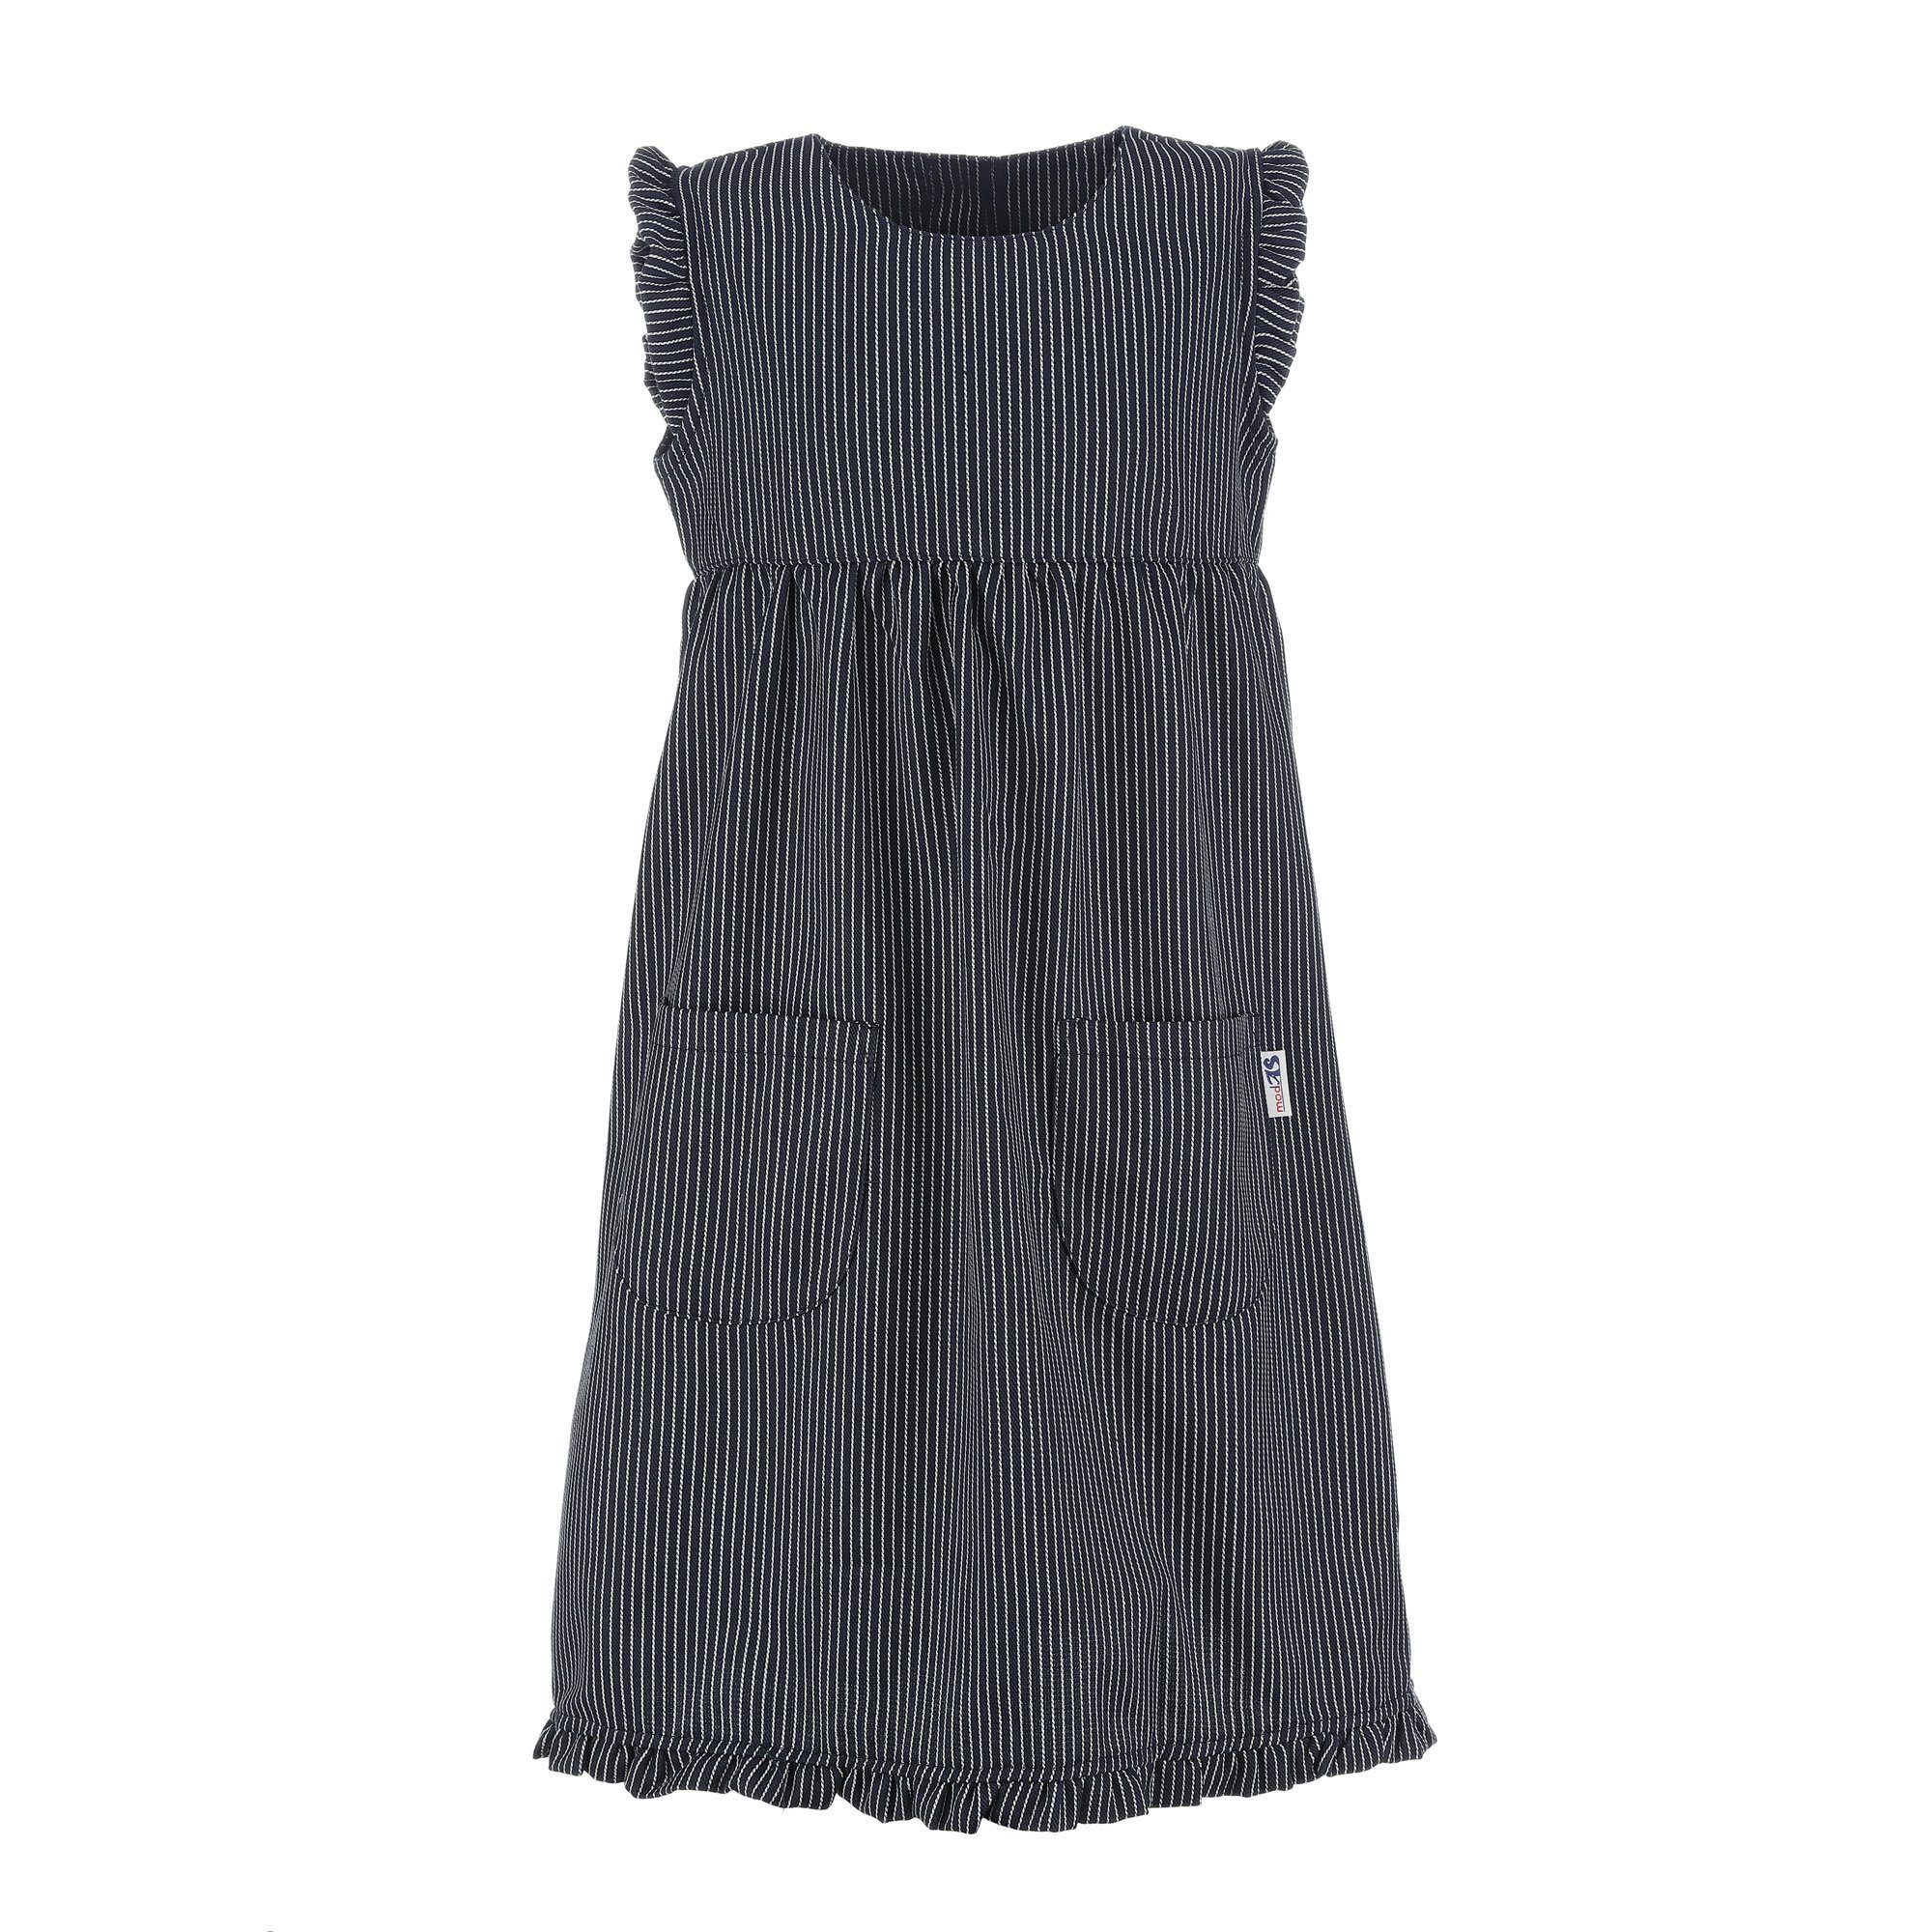 modAS Strandkleid Kinder Fischerkleid Streifen Maritim - breiter für Streifen Mädchen Blau Streifenkleid (10)